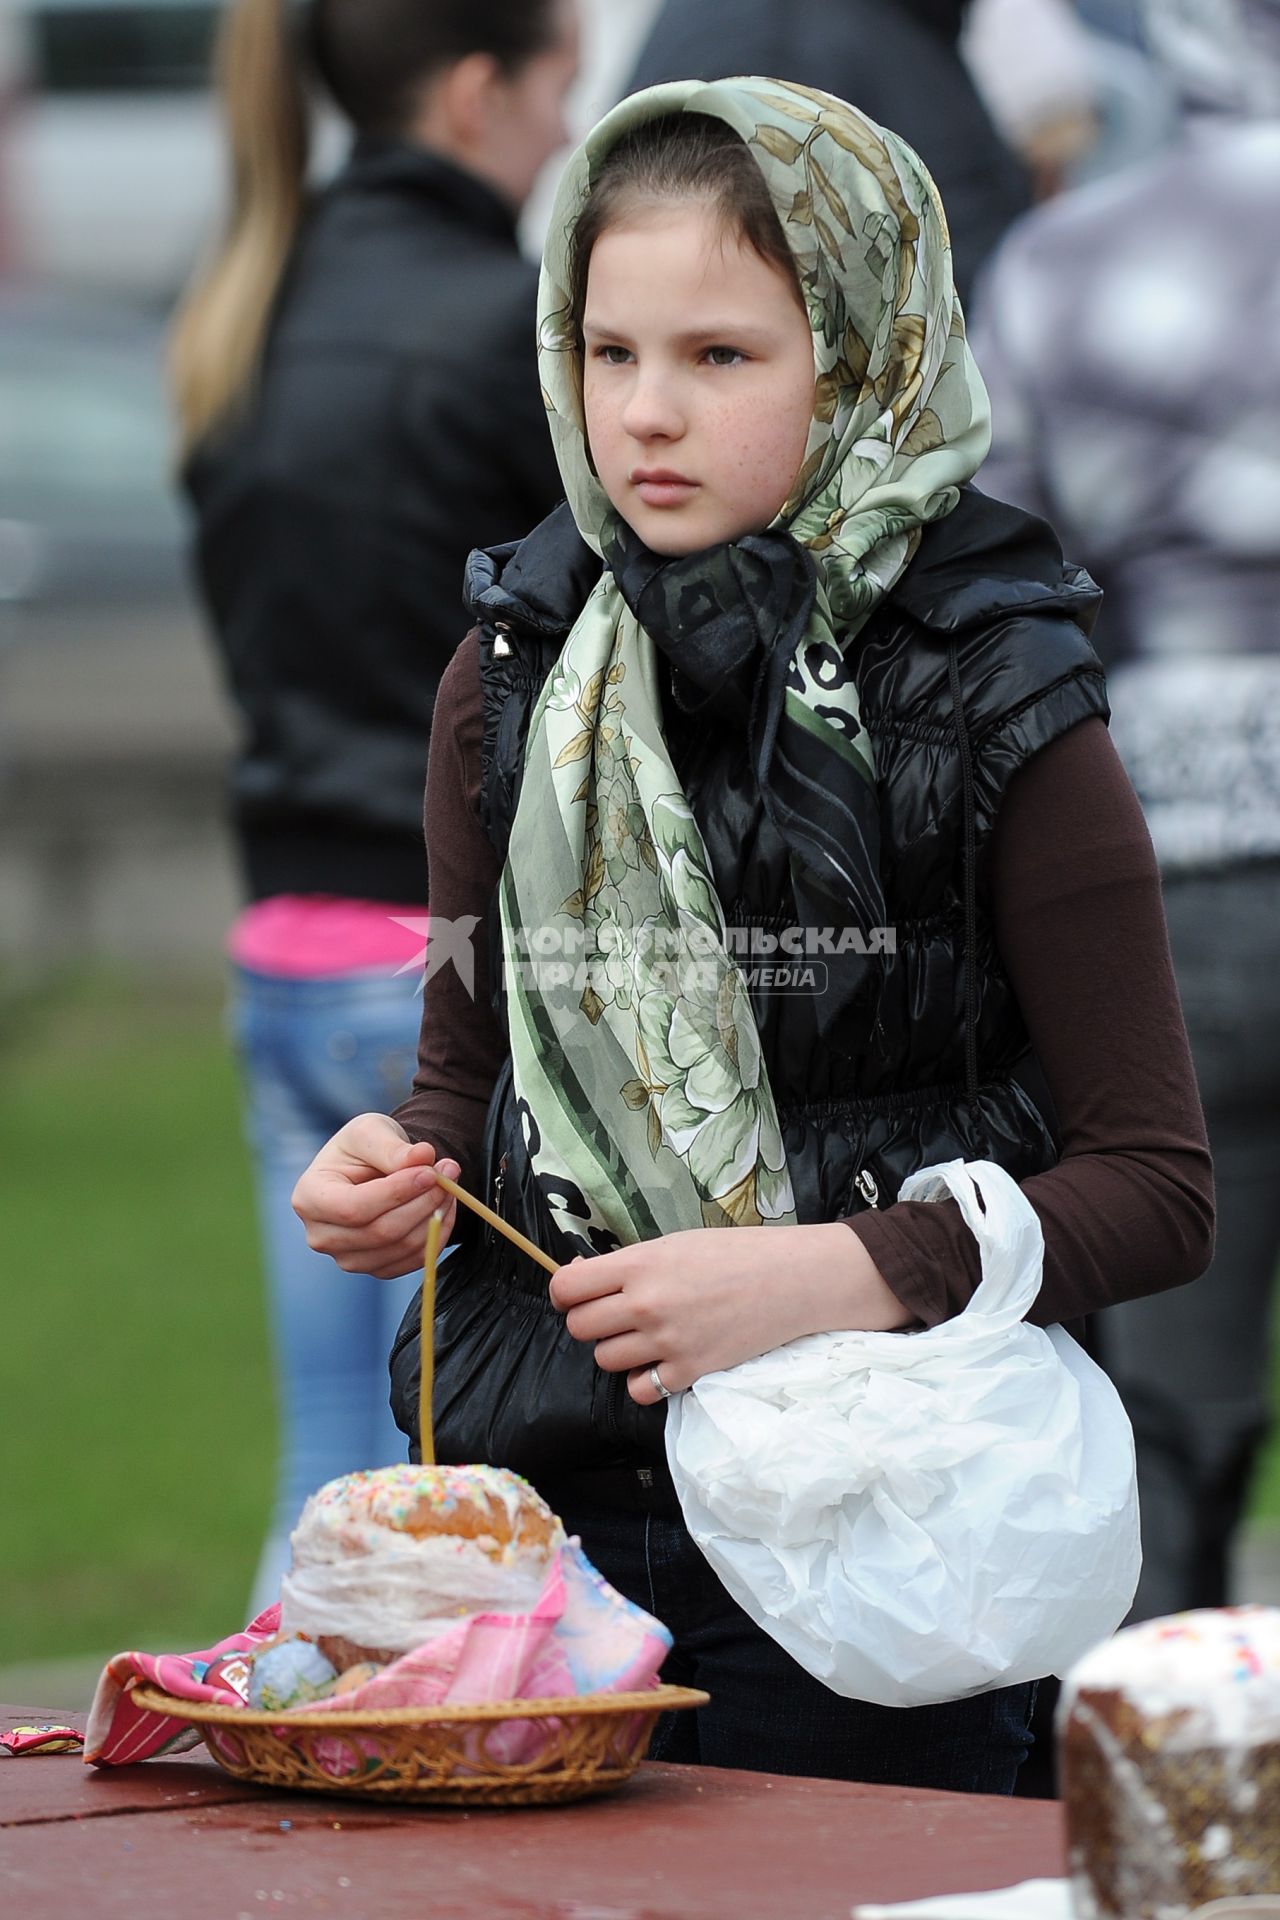 Христиане Новосибирска празднуют праздник Пасху. На снимке: девочка рядом с куличом.